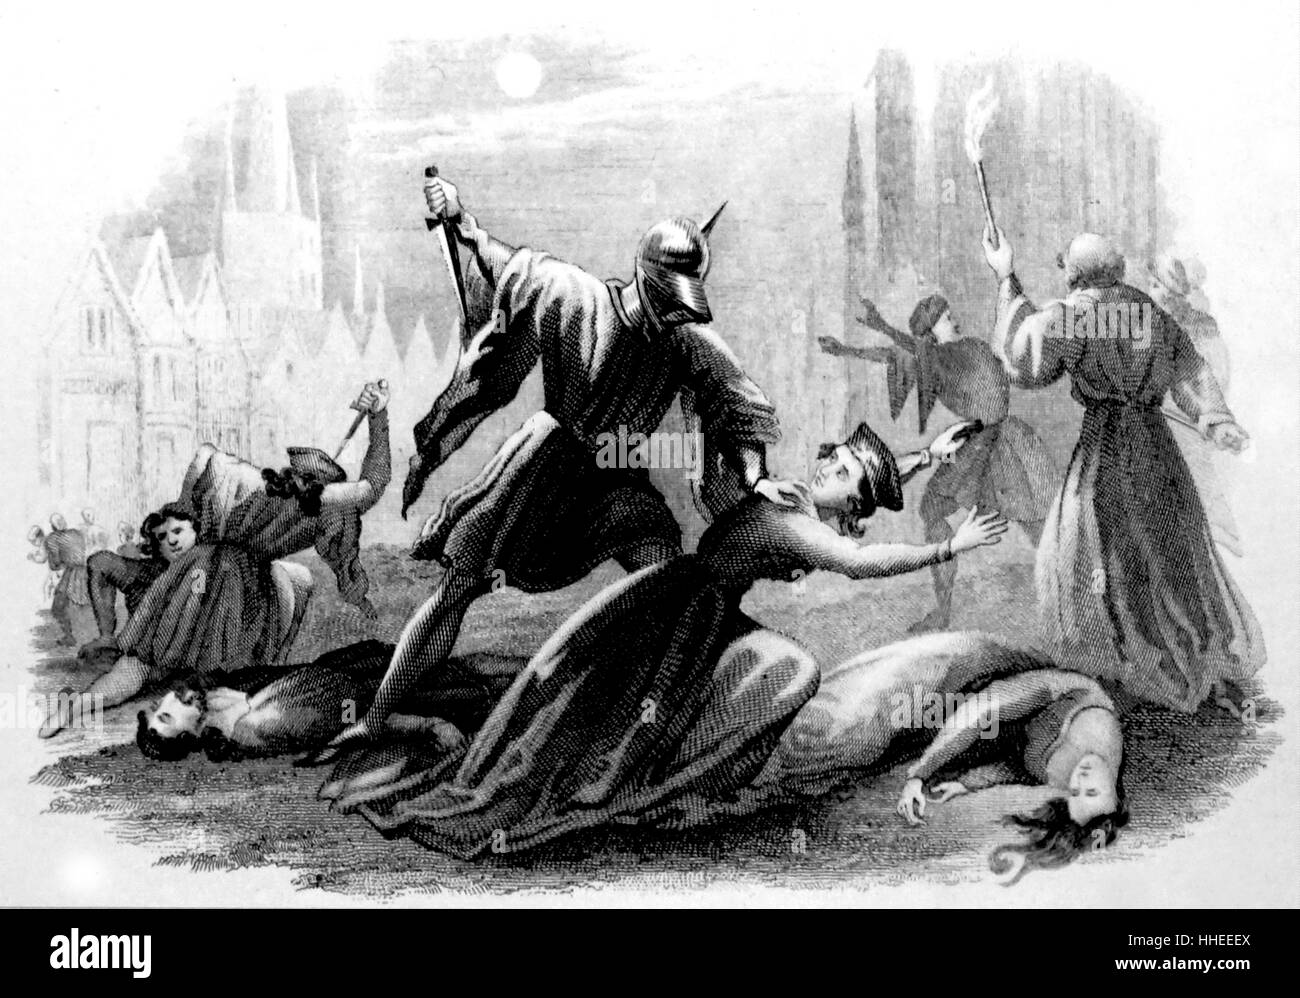 Szene aus der St. Bartholomäus Tag Massaker. einer Zielgruppe von Ermordungen und eine Welle der Katholischen mob Gewalt, die sich gegen die Hugenotten (Französisch reformierte Protestanten) während der französischen Religionskriege. Vom 16. Jahrhundert Stockfoto